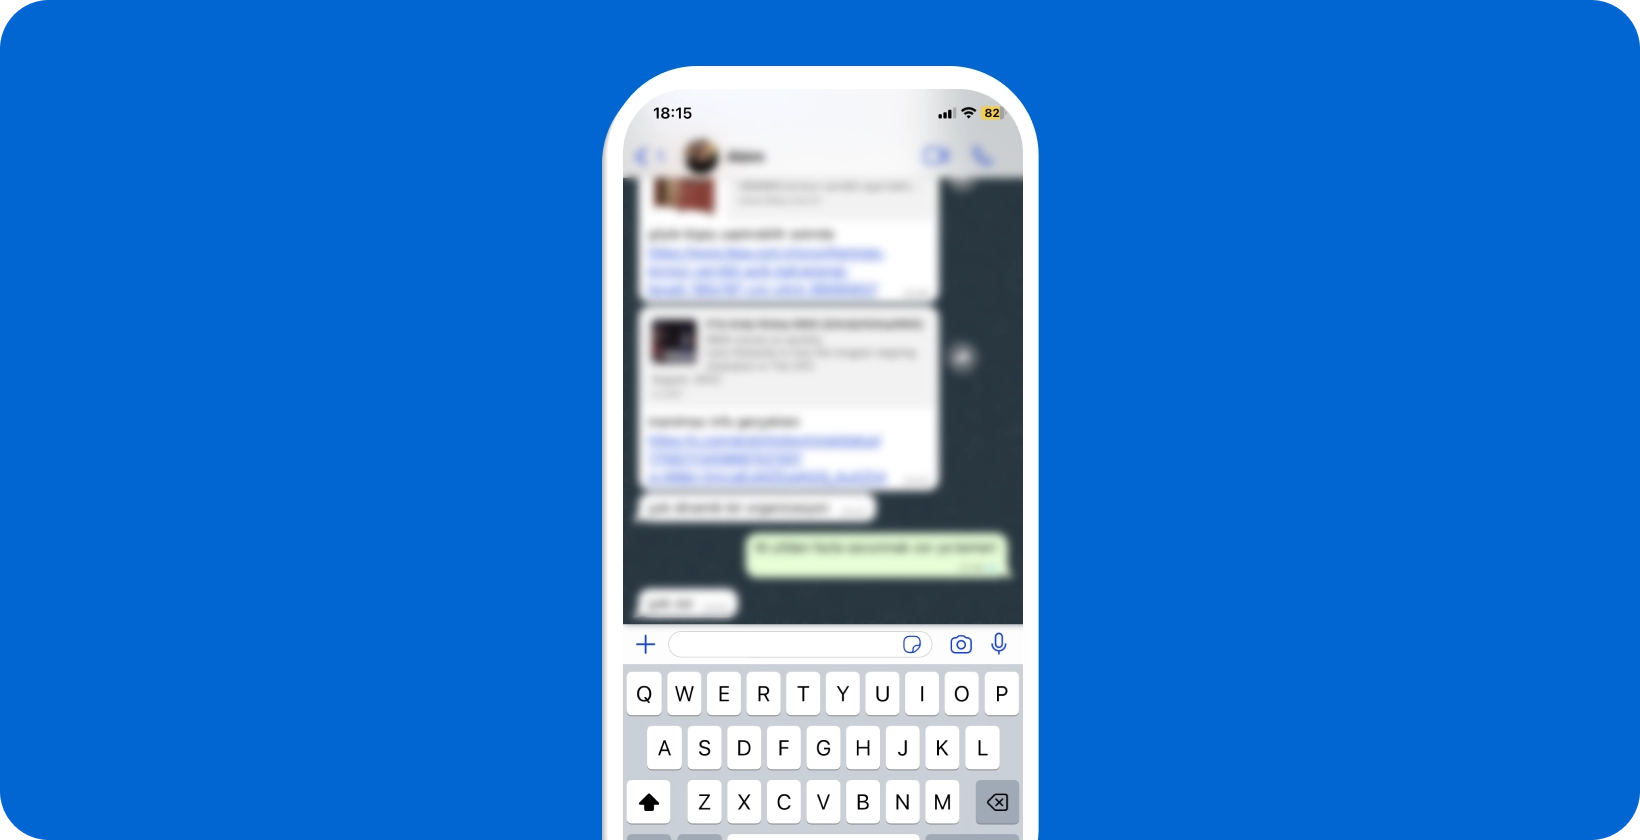 Pametni telefon koji prikazuje aktivan WhatsApp razgovor s otvorenom tipkovnicom, spreman za diktiranje glasa.